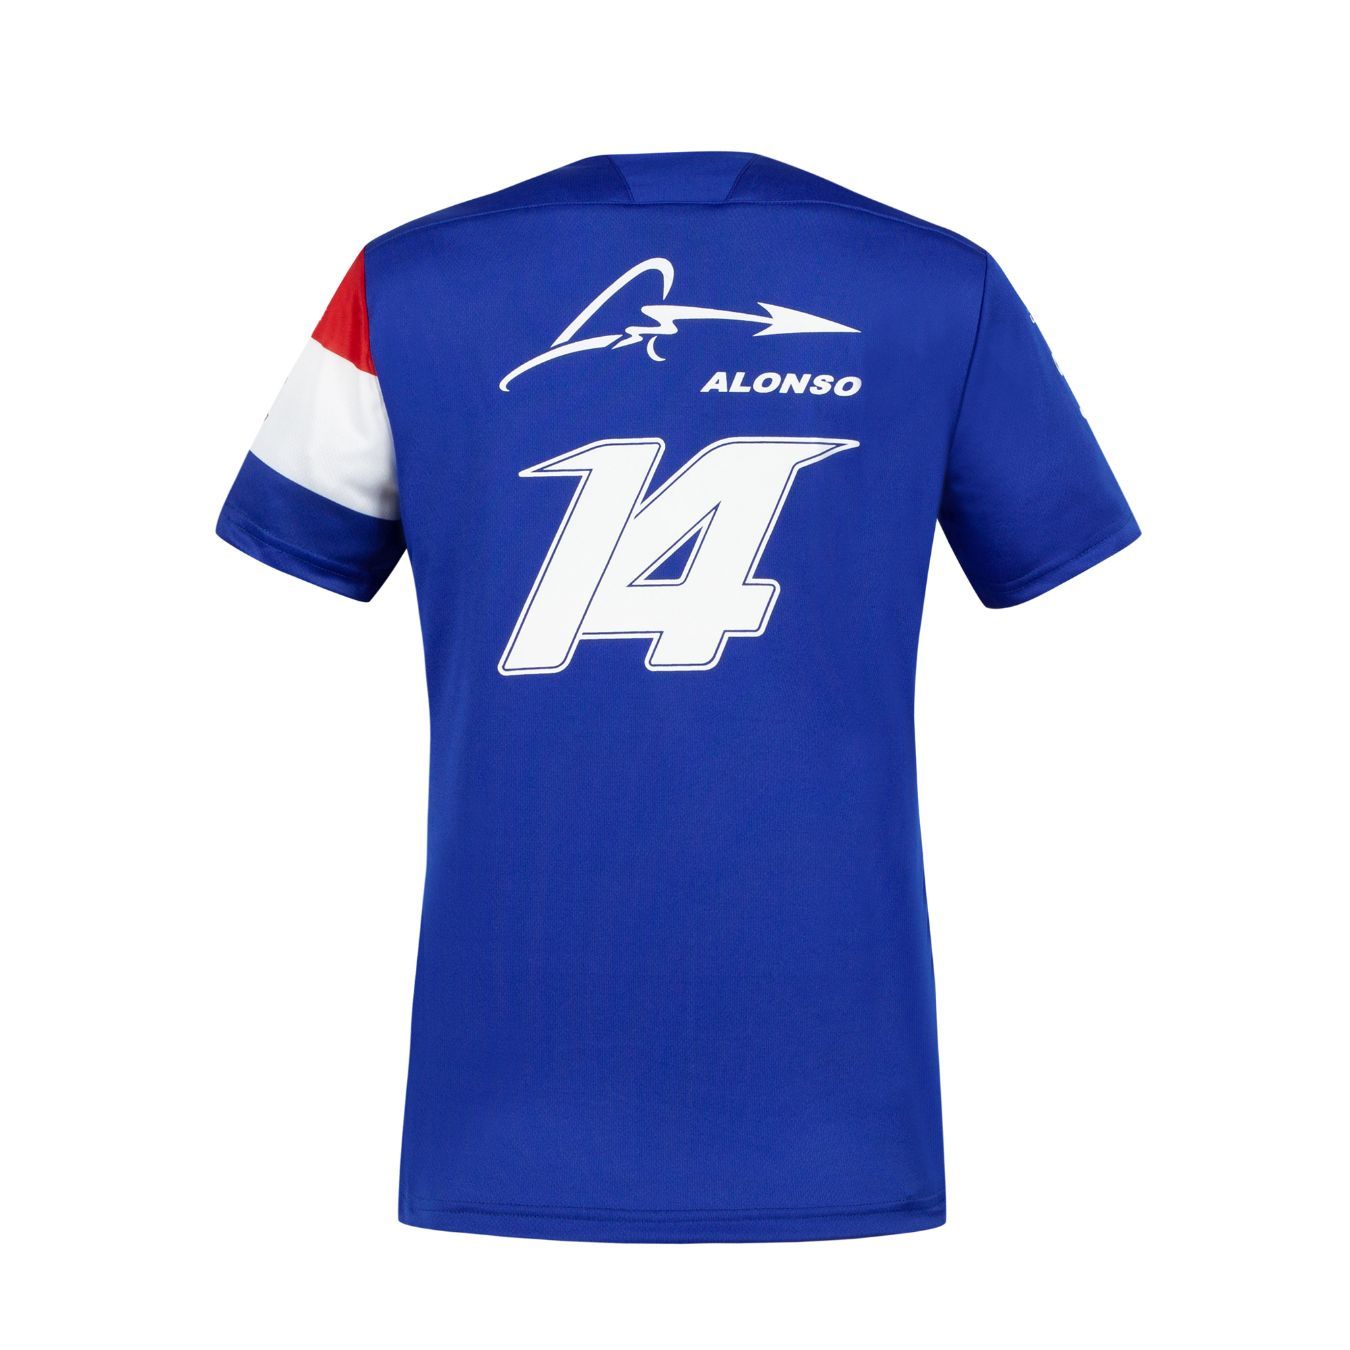 T-shirt maillot femme ALPINE F1 Fernando Alonso 14 bleu vue dos